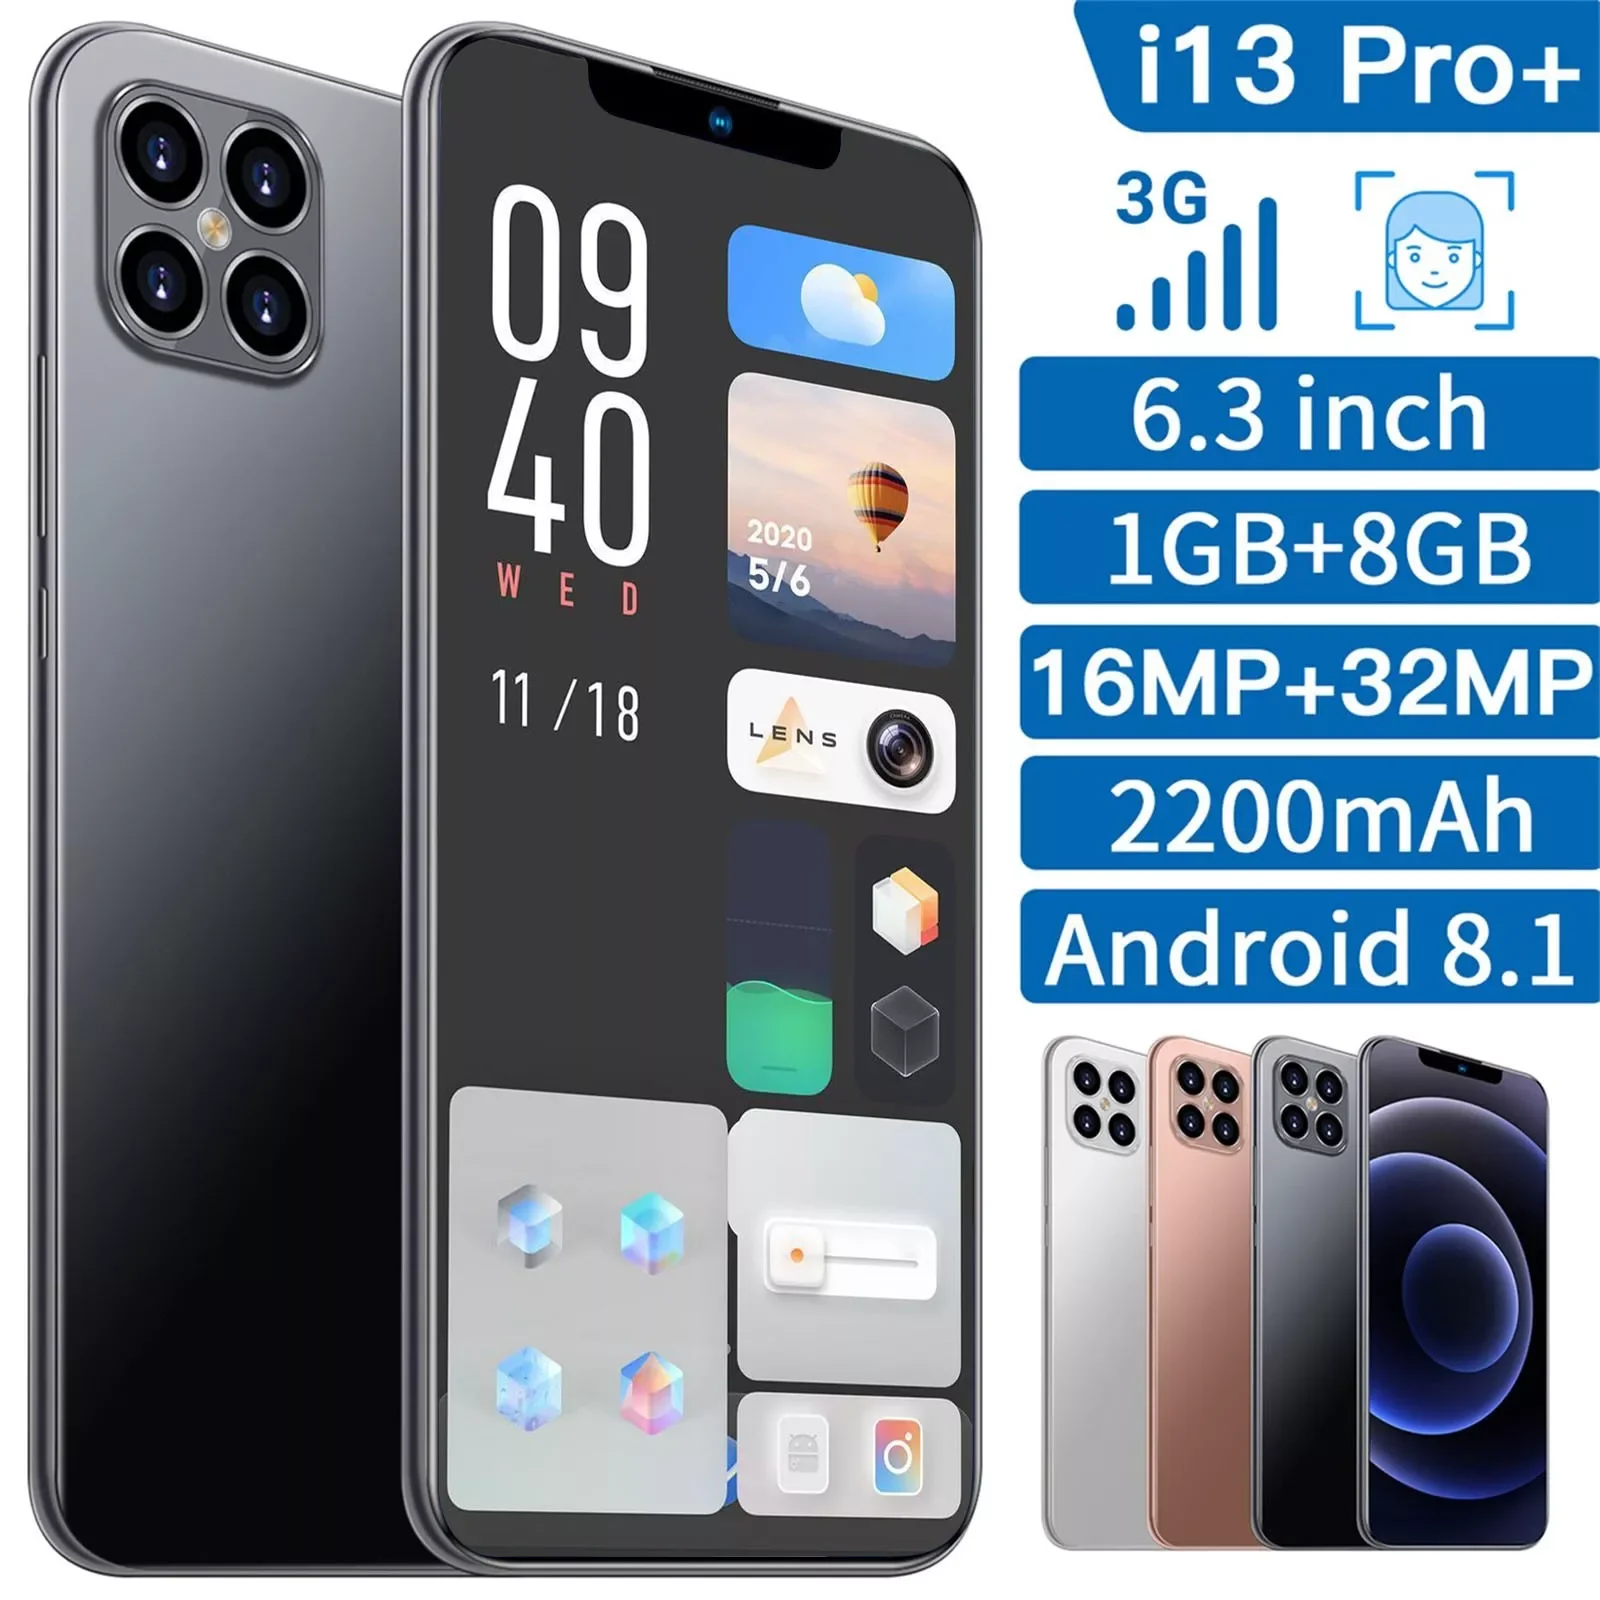 CARPRIE i13 Pro+ Smartphones Android 8.1 1GB+8GB Cell Phones Quad-Core 6.3 Inch Mobile Phone 2600mAh Smartphones смартфоны